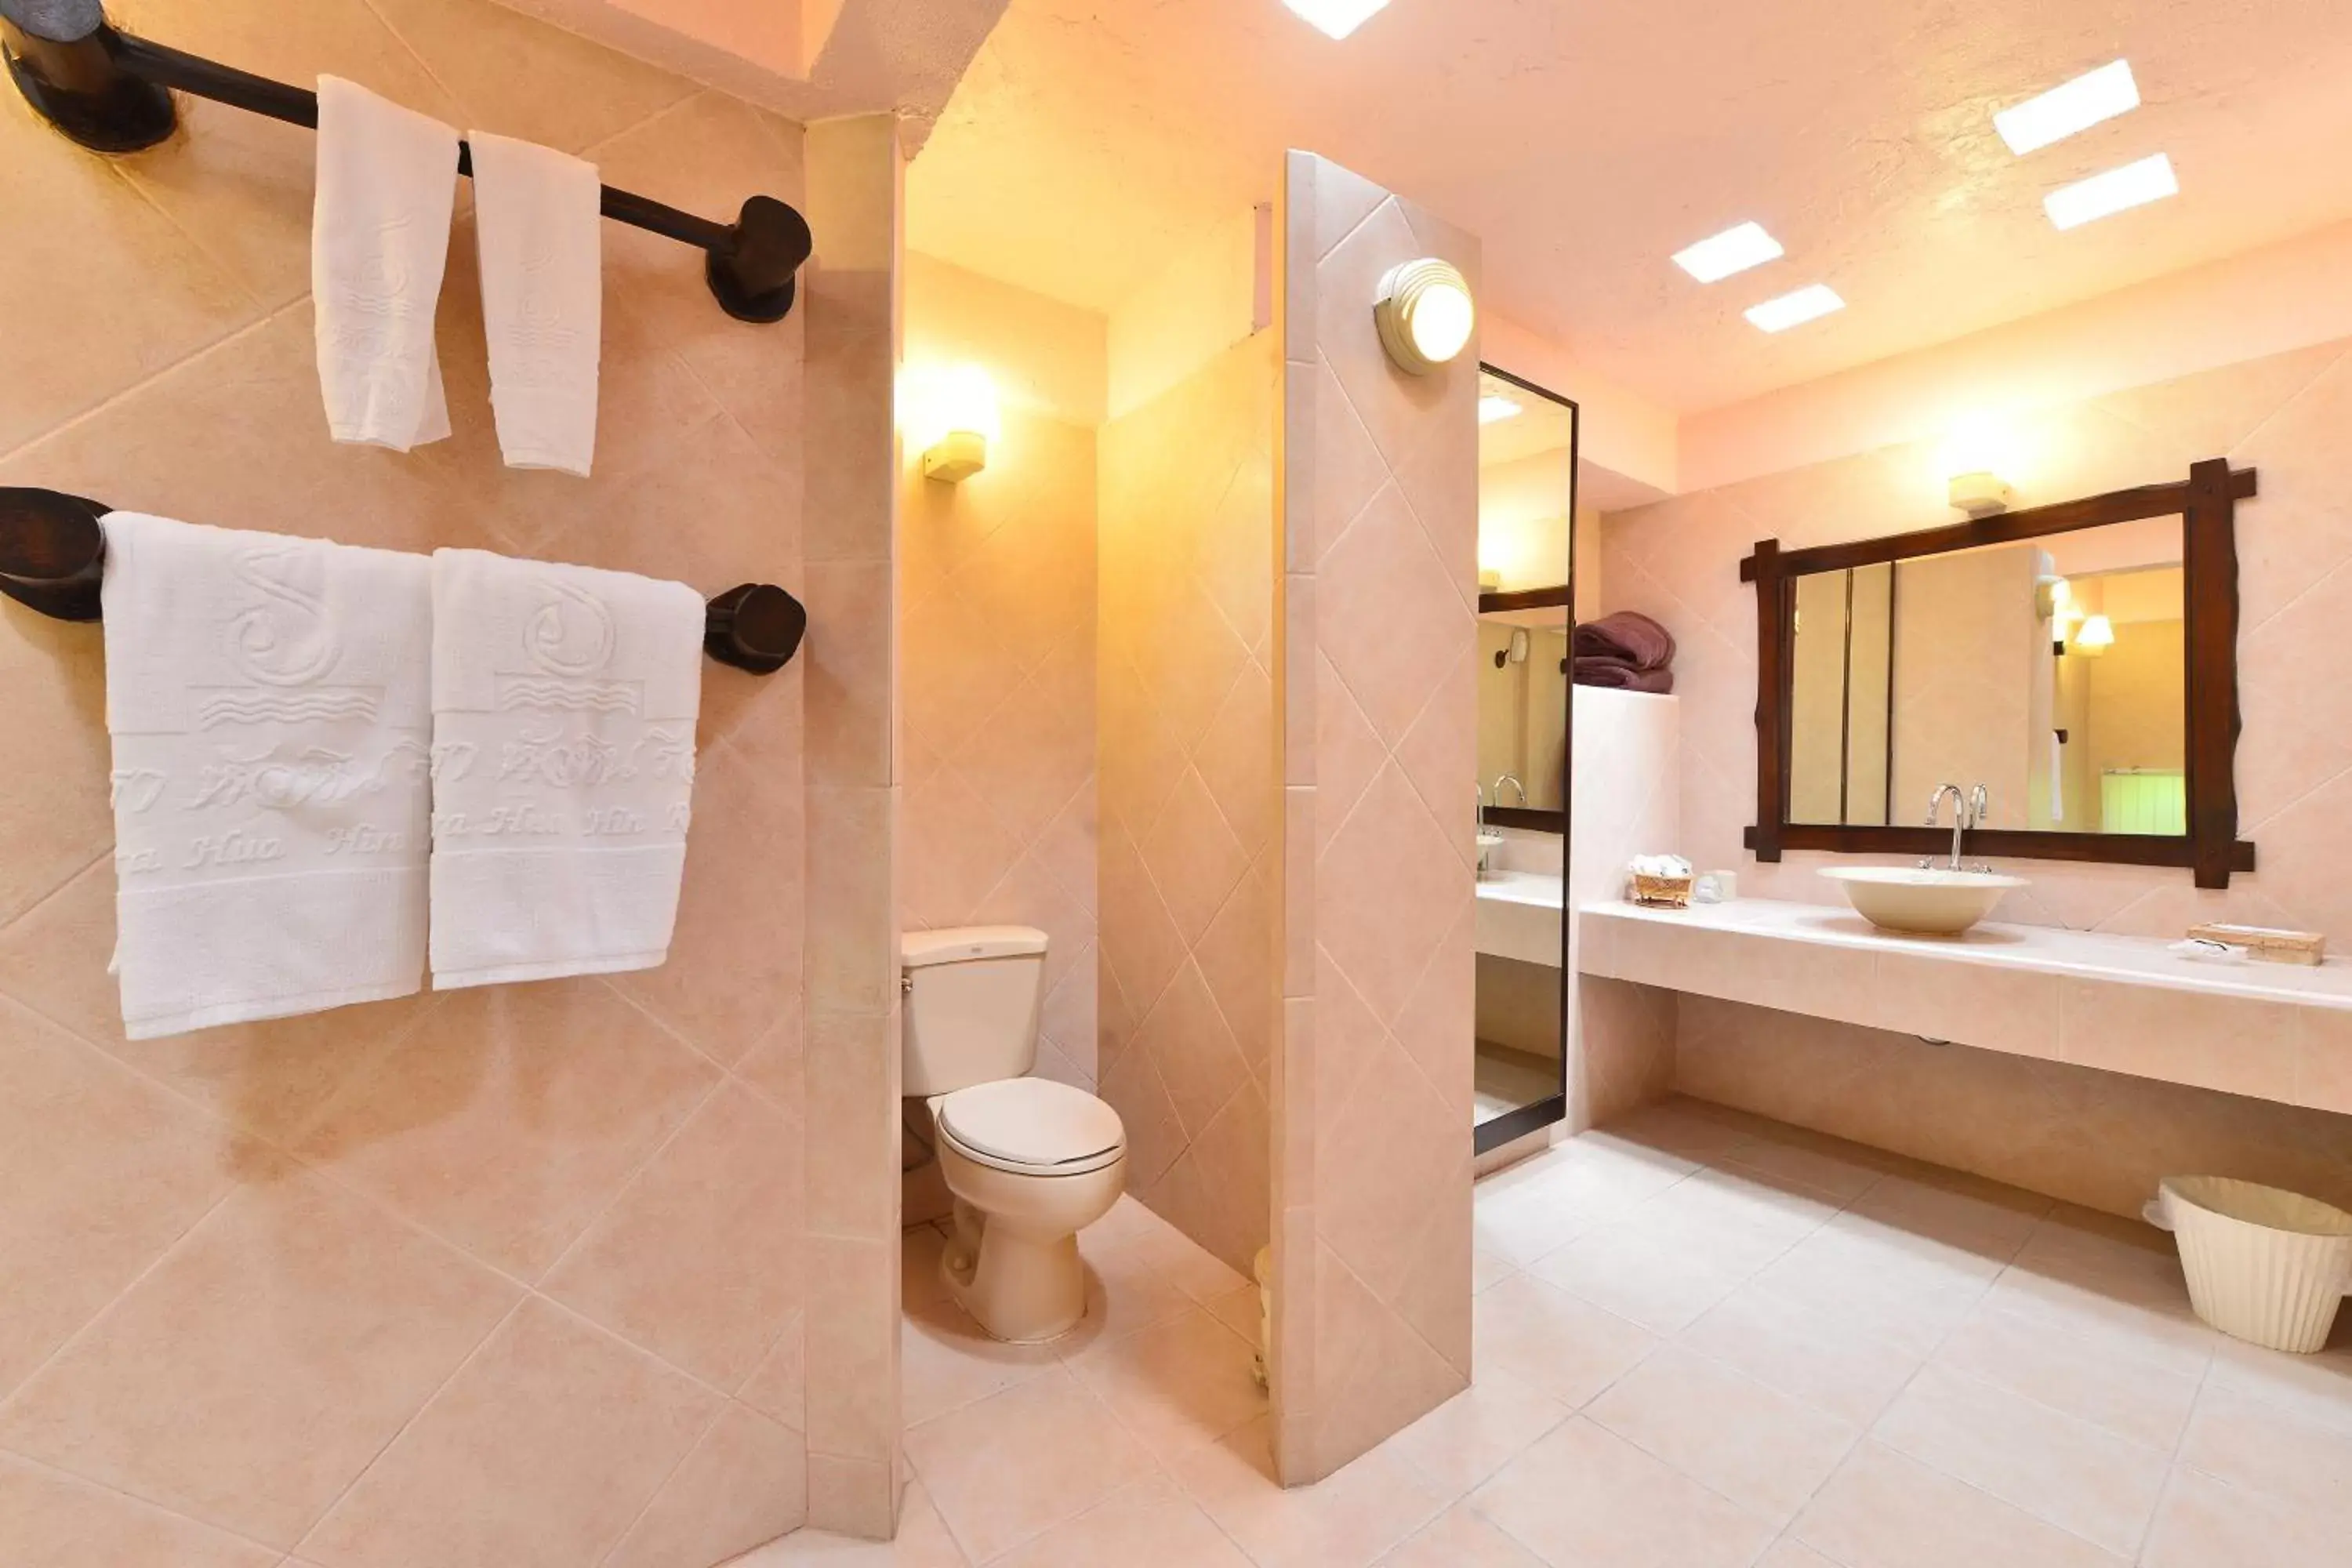 Toilet, Bathroom in Supatra Hua Hin Resort